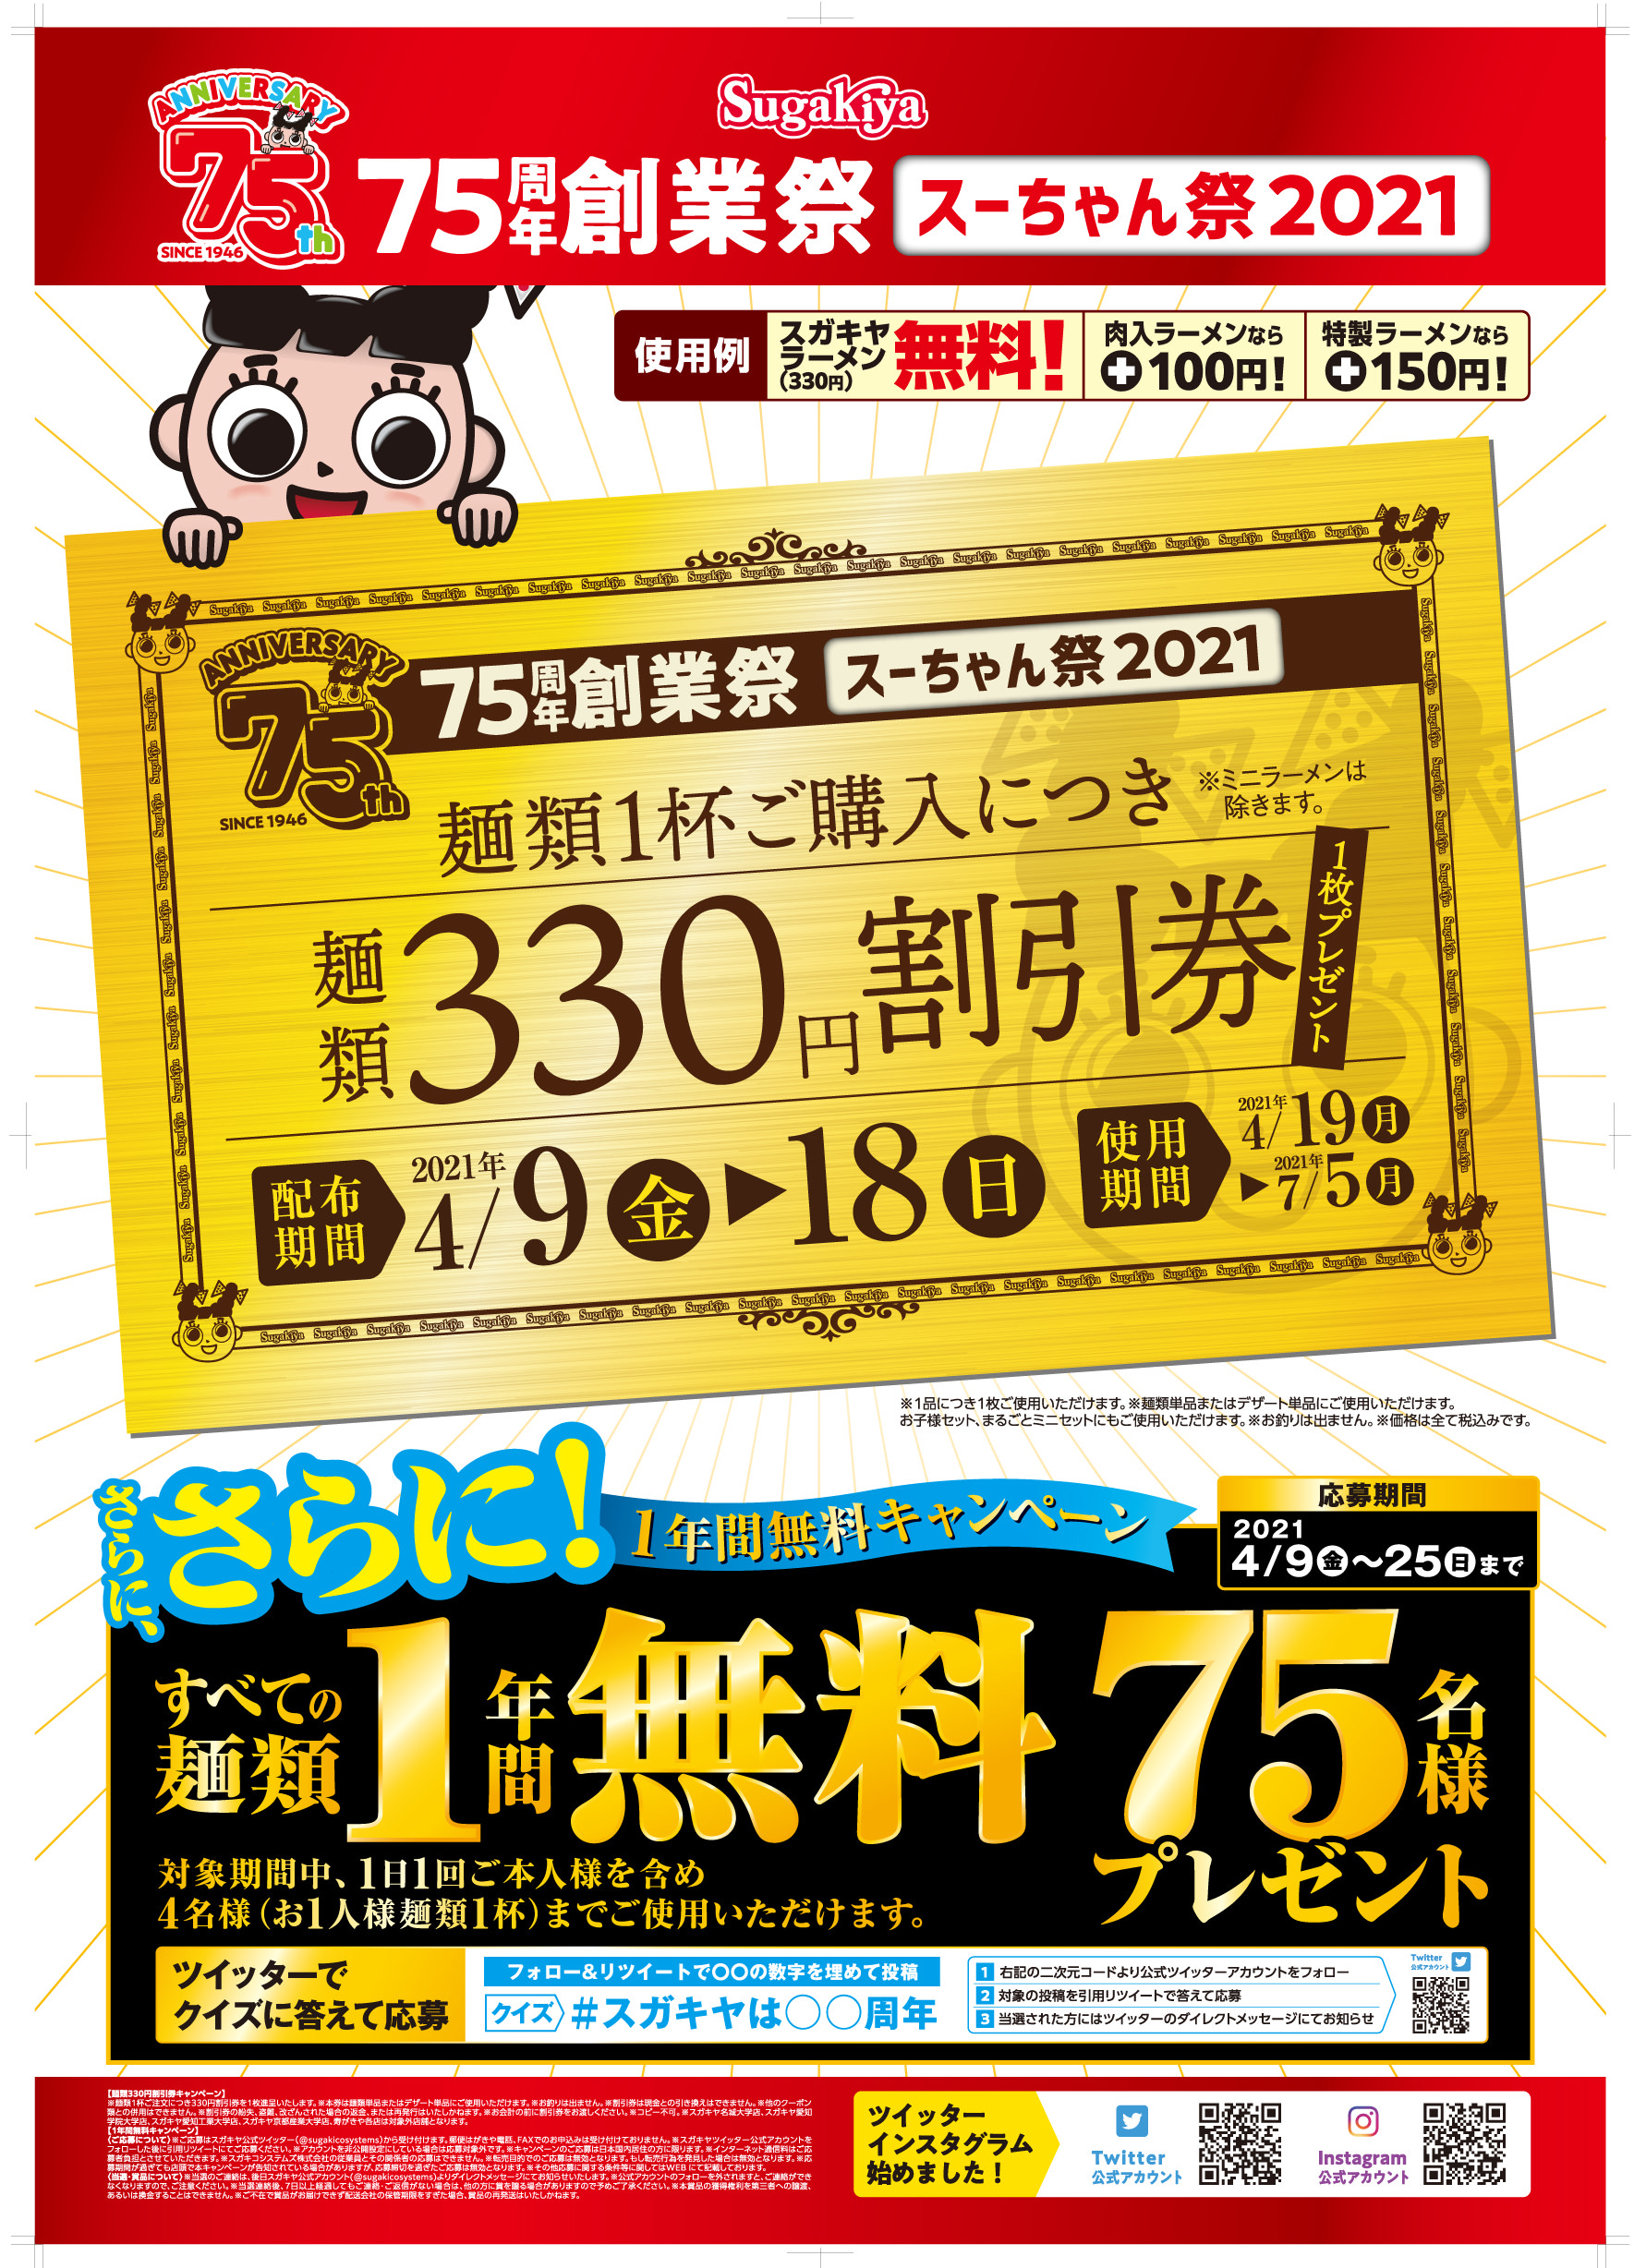 4月9日からのスガキヤ75周年創業祭「スーちゃん祭」開催迫る！
麺類330円割引券や、麺類1年間無料の特典がもらえるチャンス